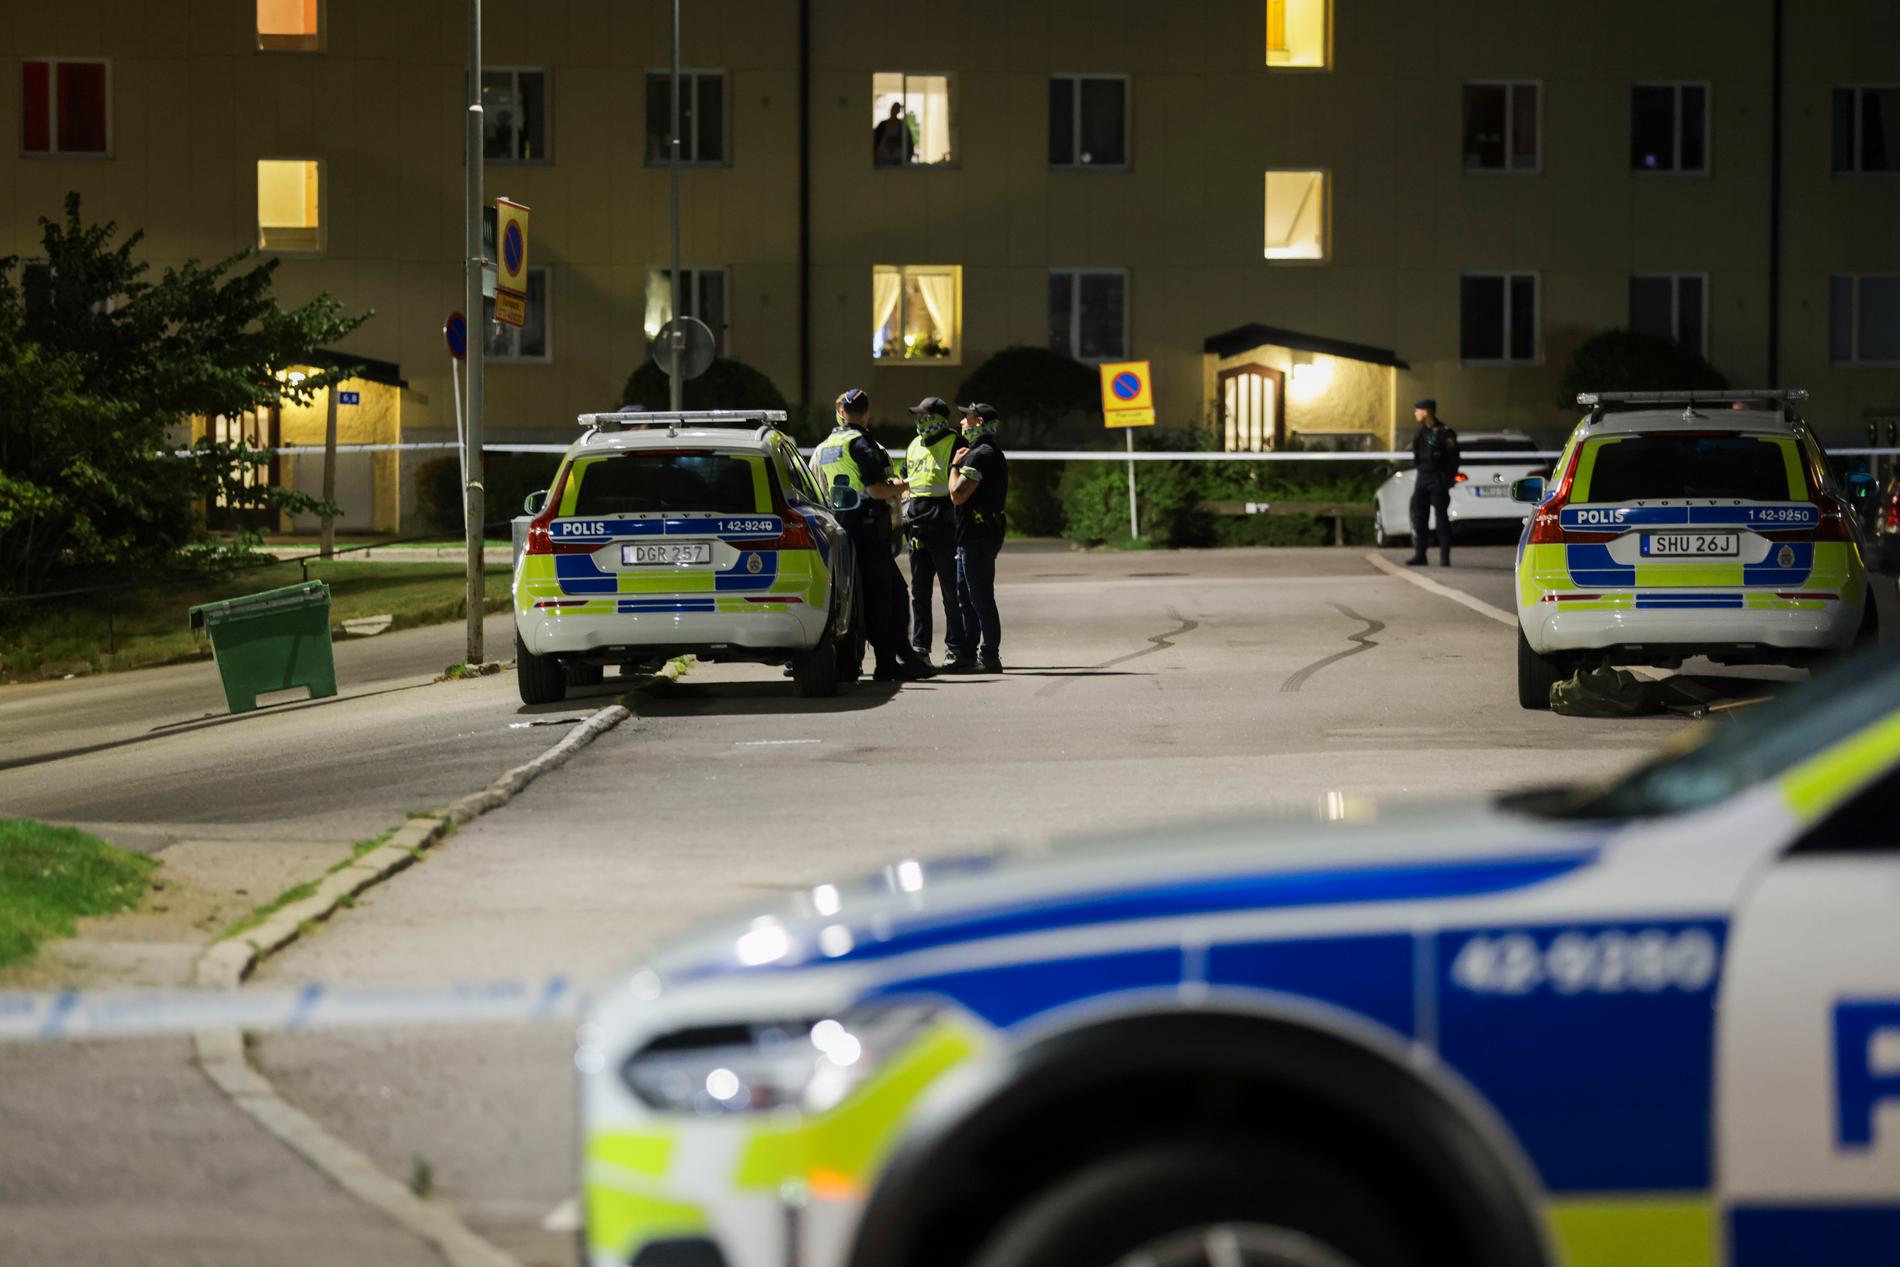 L’ondata di violenza in Svezia: – un grave problema nazionale